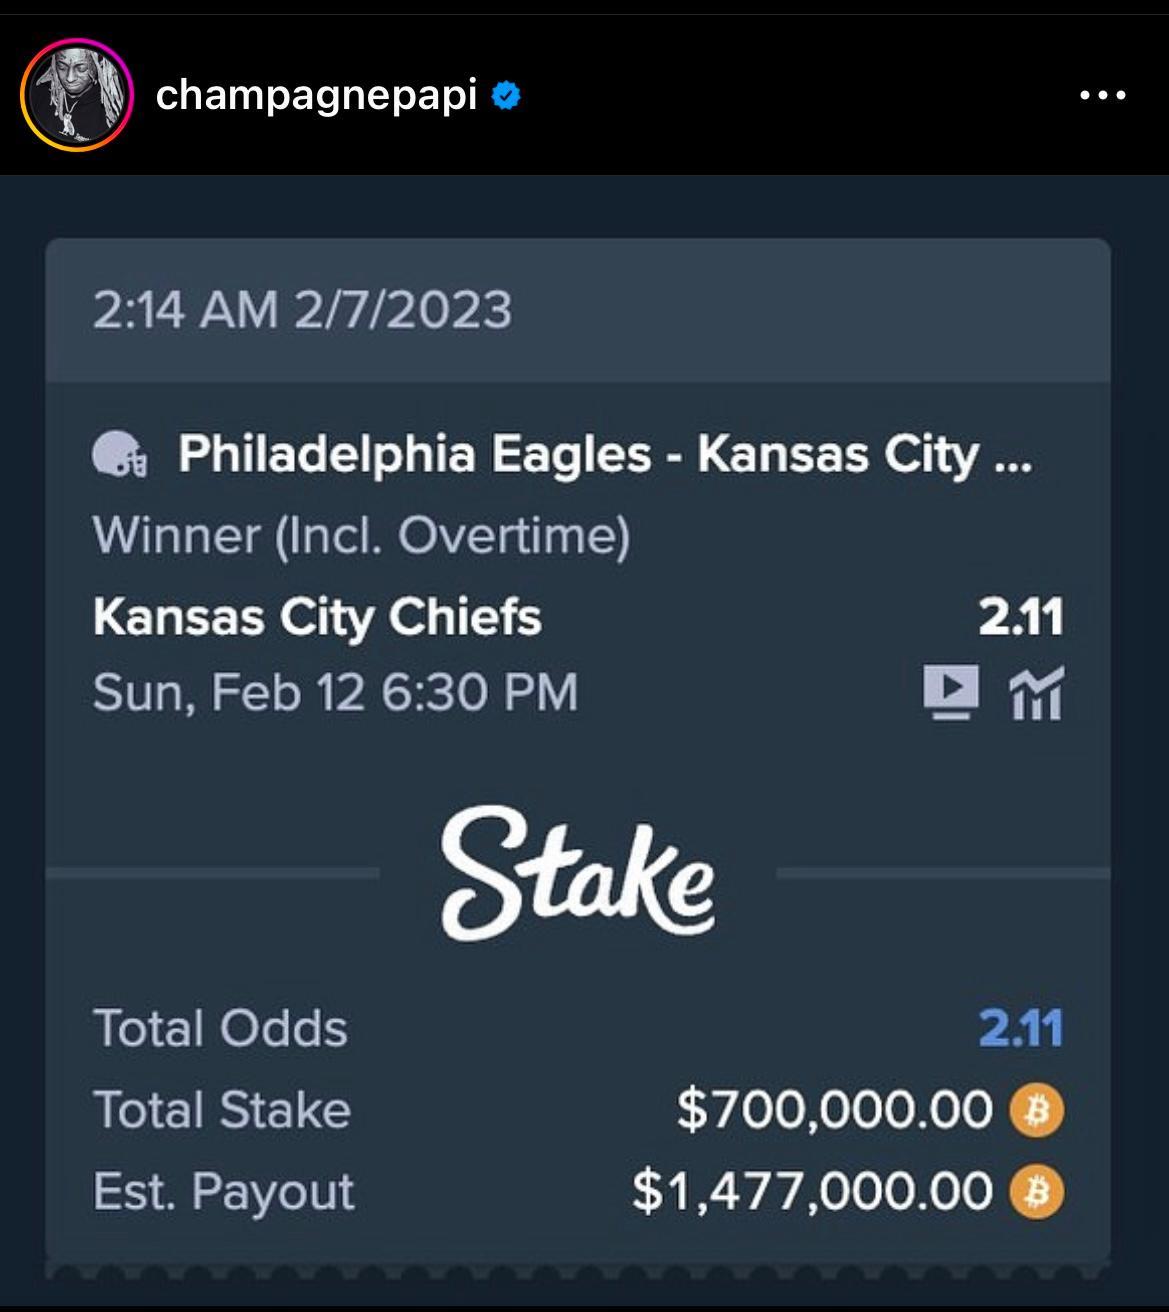 Drake Super Bowl bet